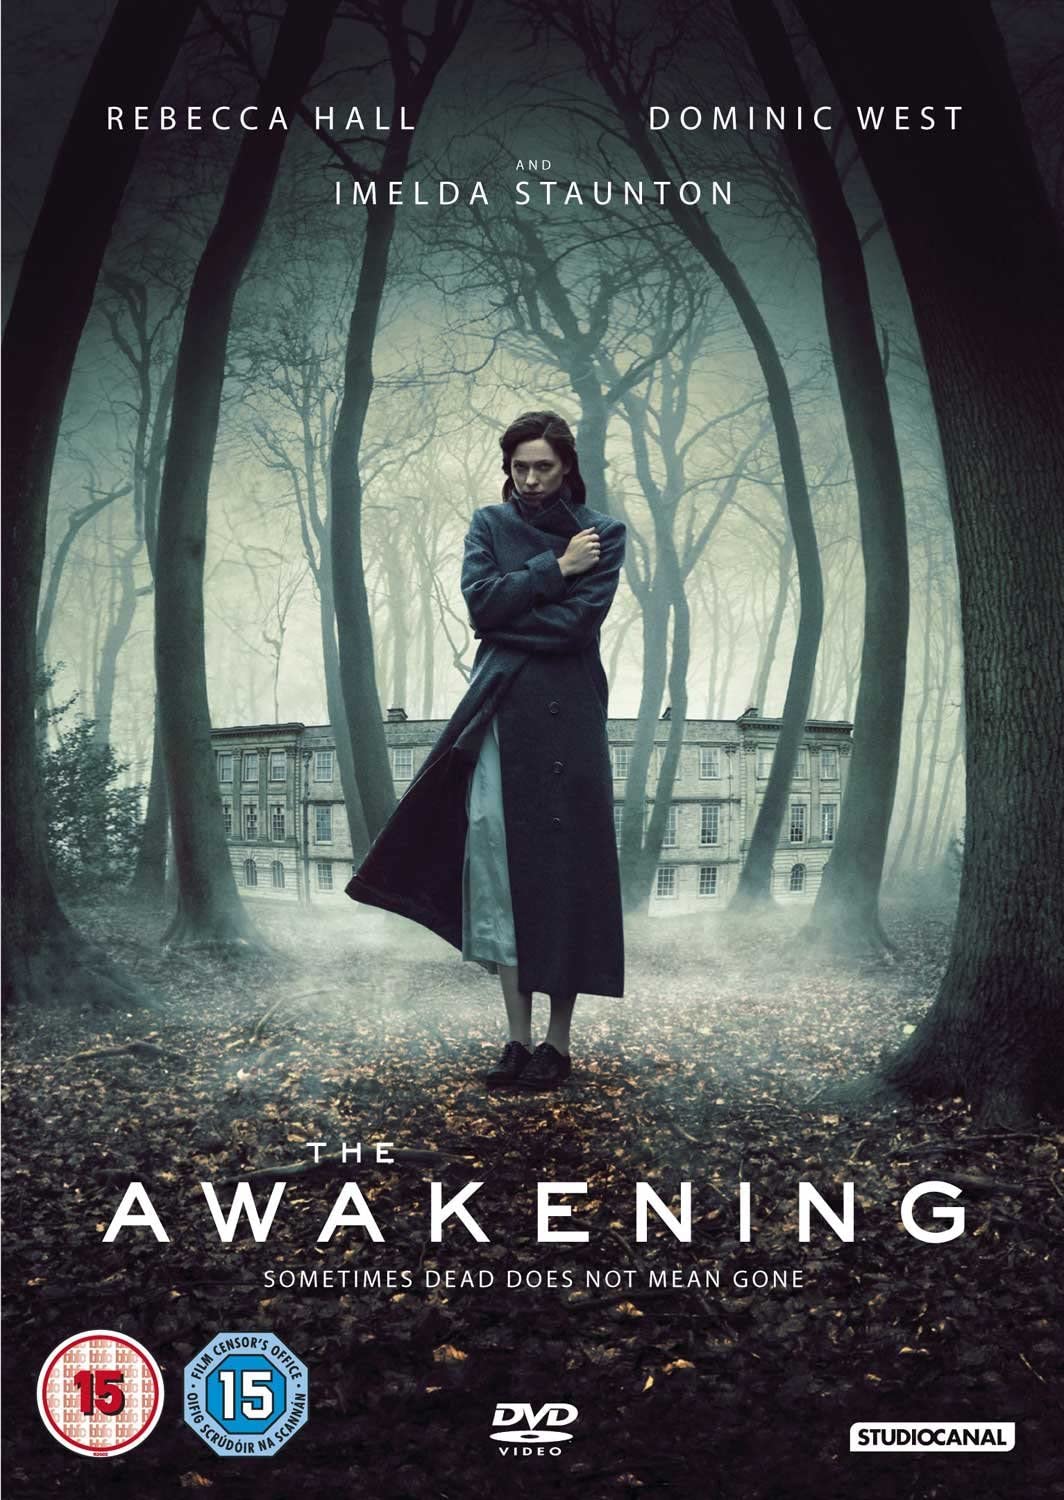 The Awakening (2011) [2017] - Horror/Thriller [DVD]